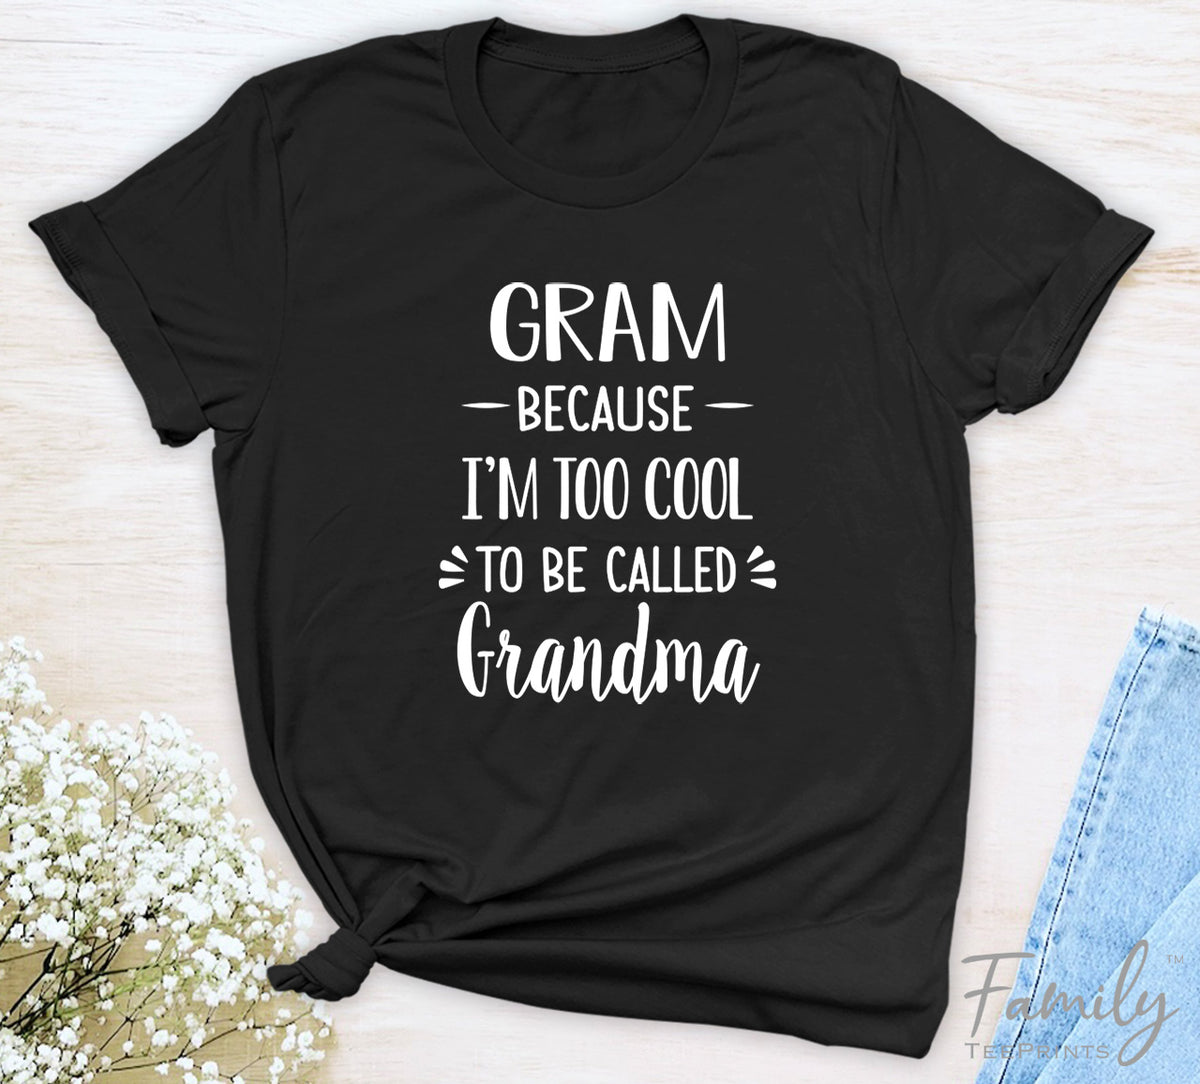 Gram Because I'm Too Cool ... - Unisex T-shirt - Gram Shirt - Gift For Gram